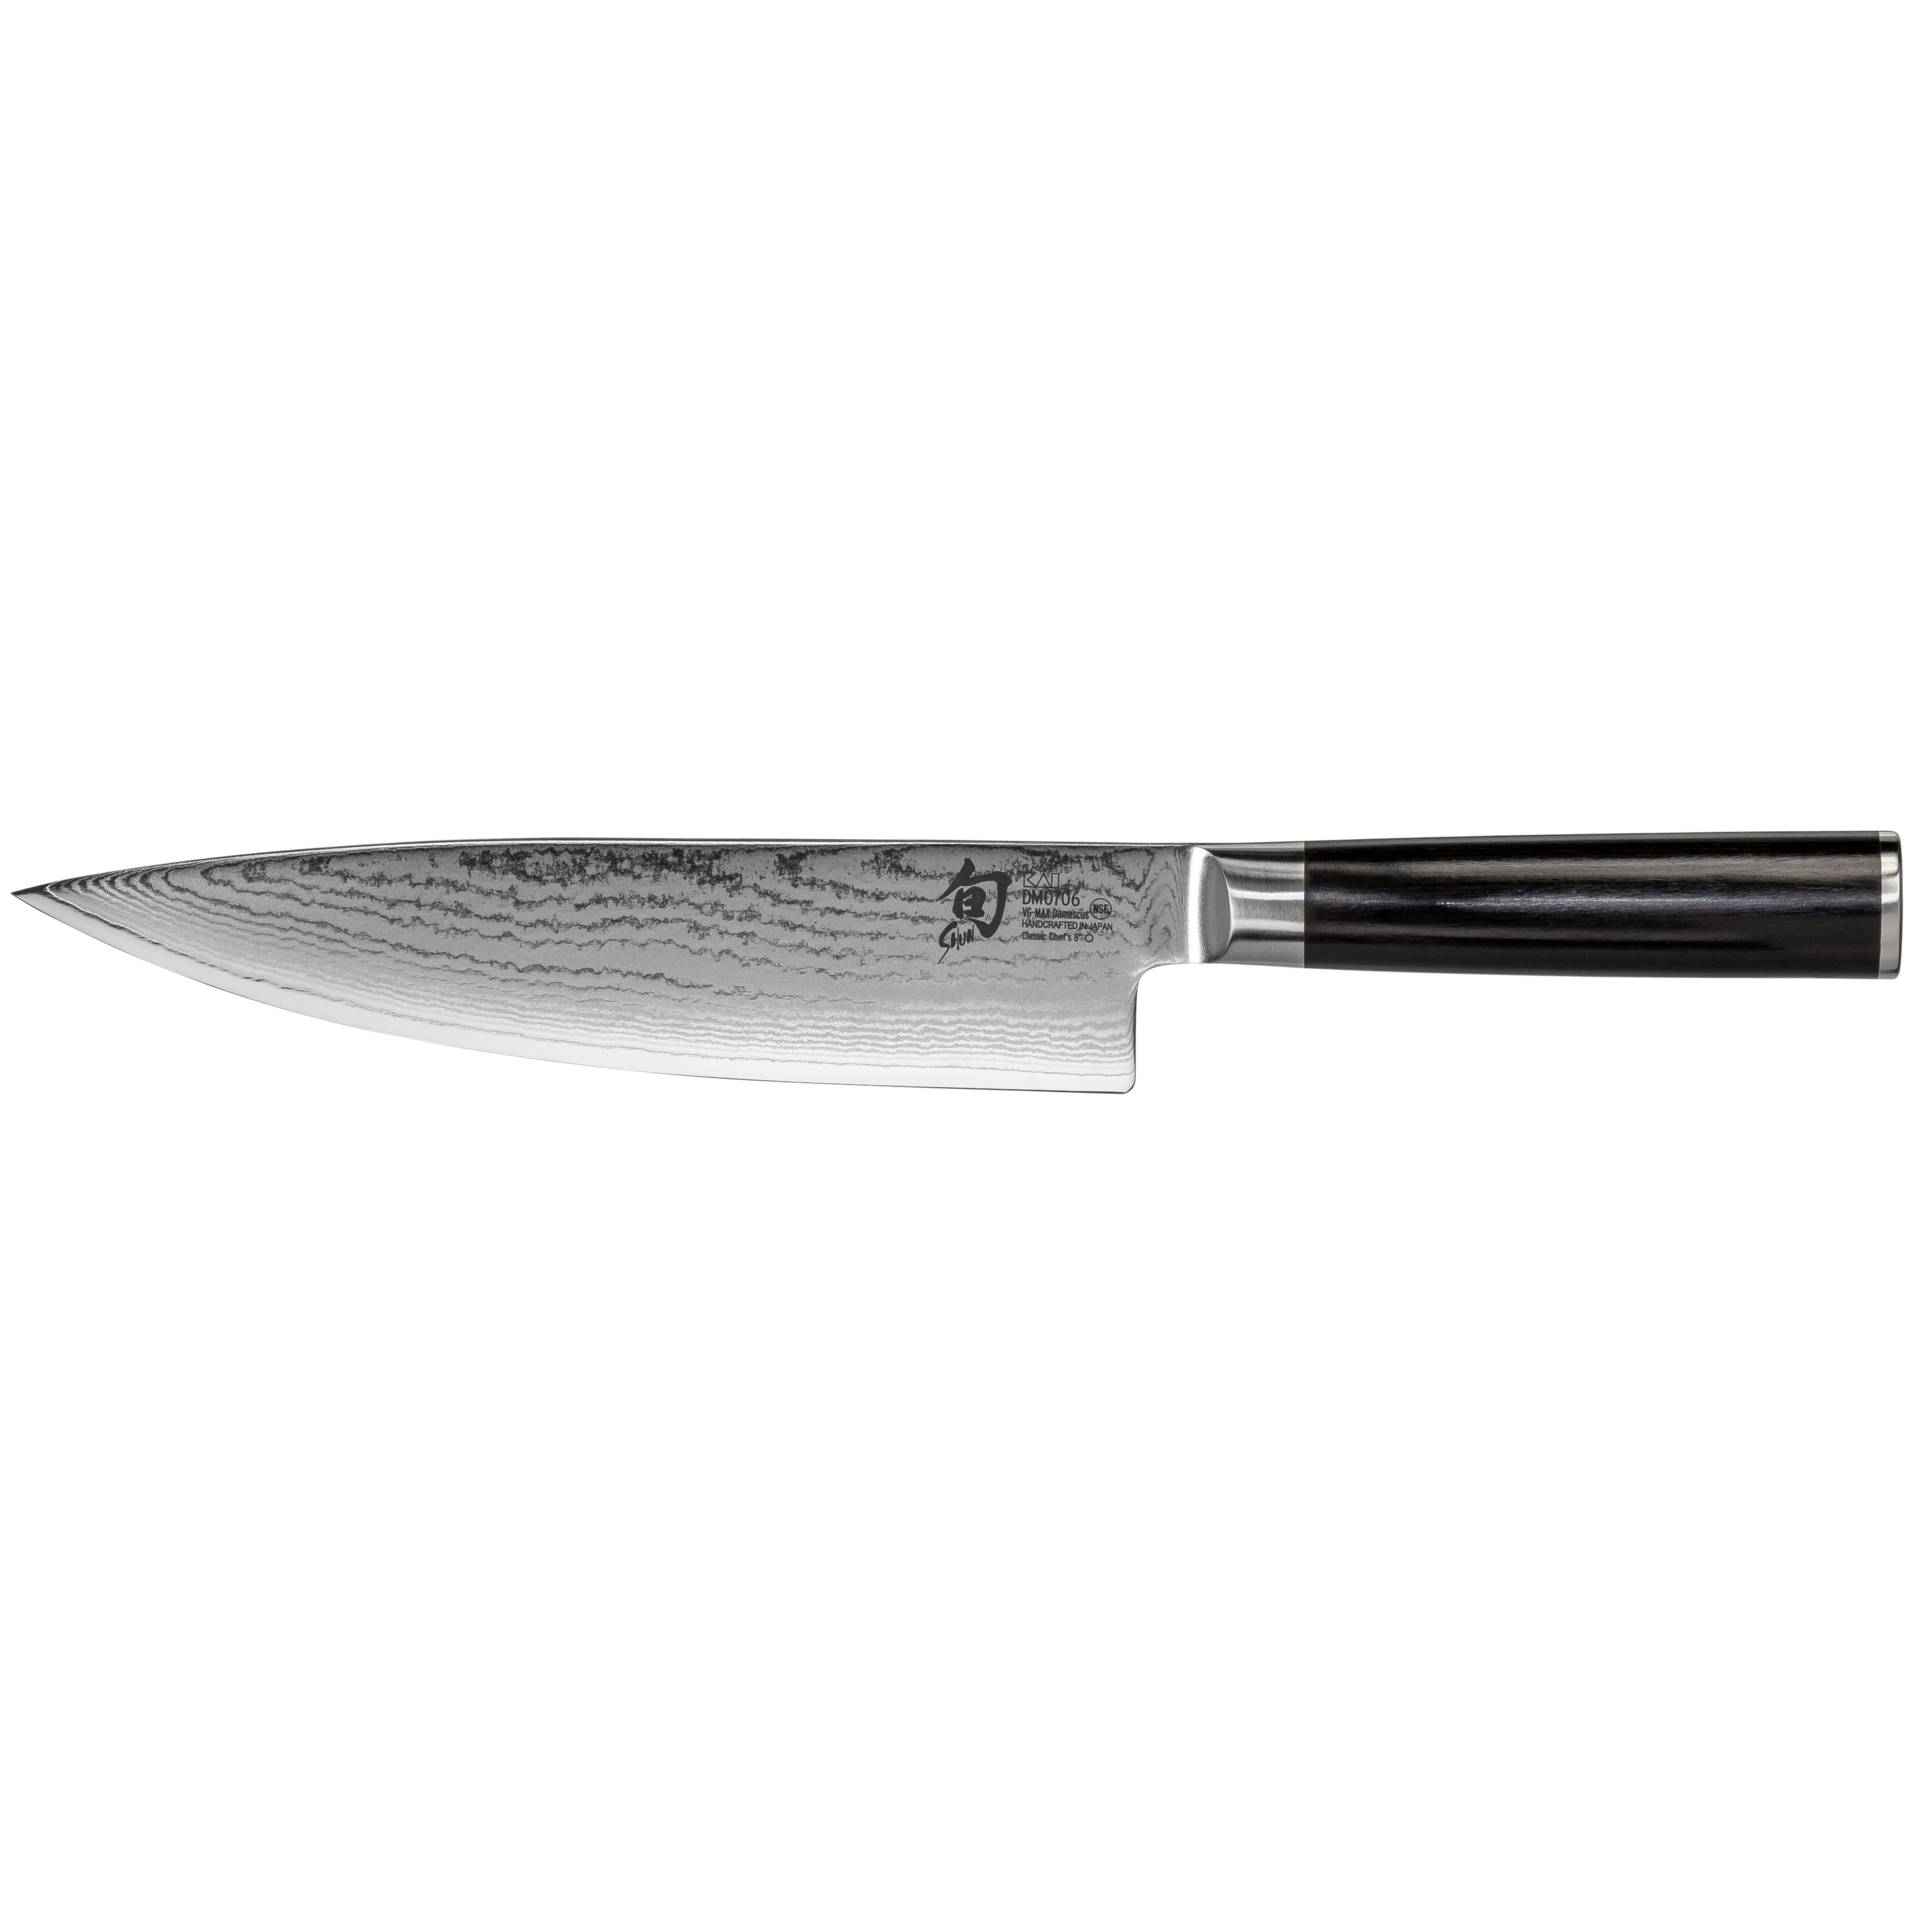 KAI Shun Classic coltello cuoco 20,0cm